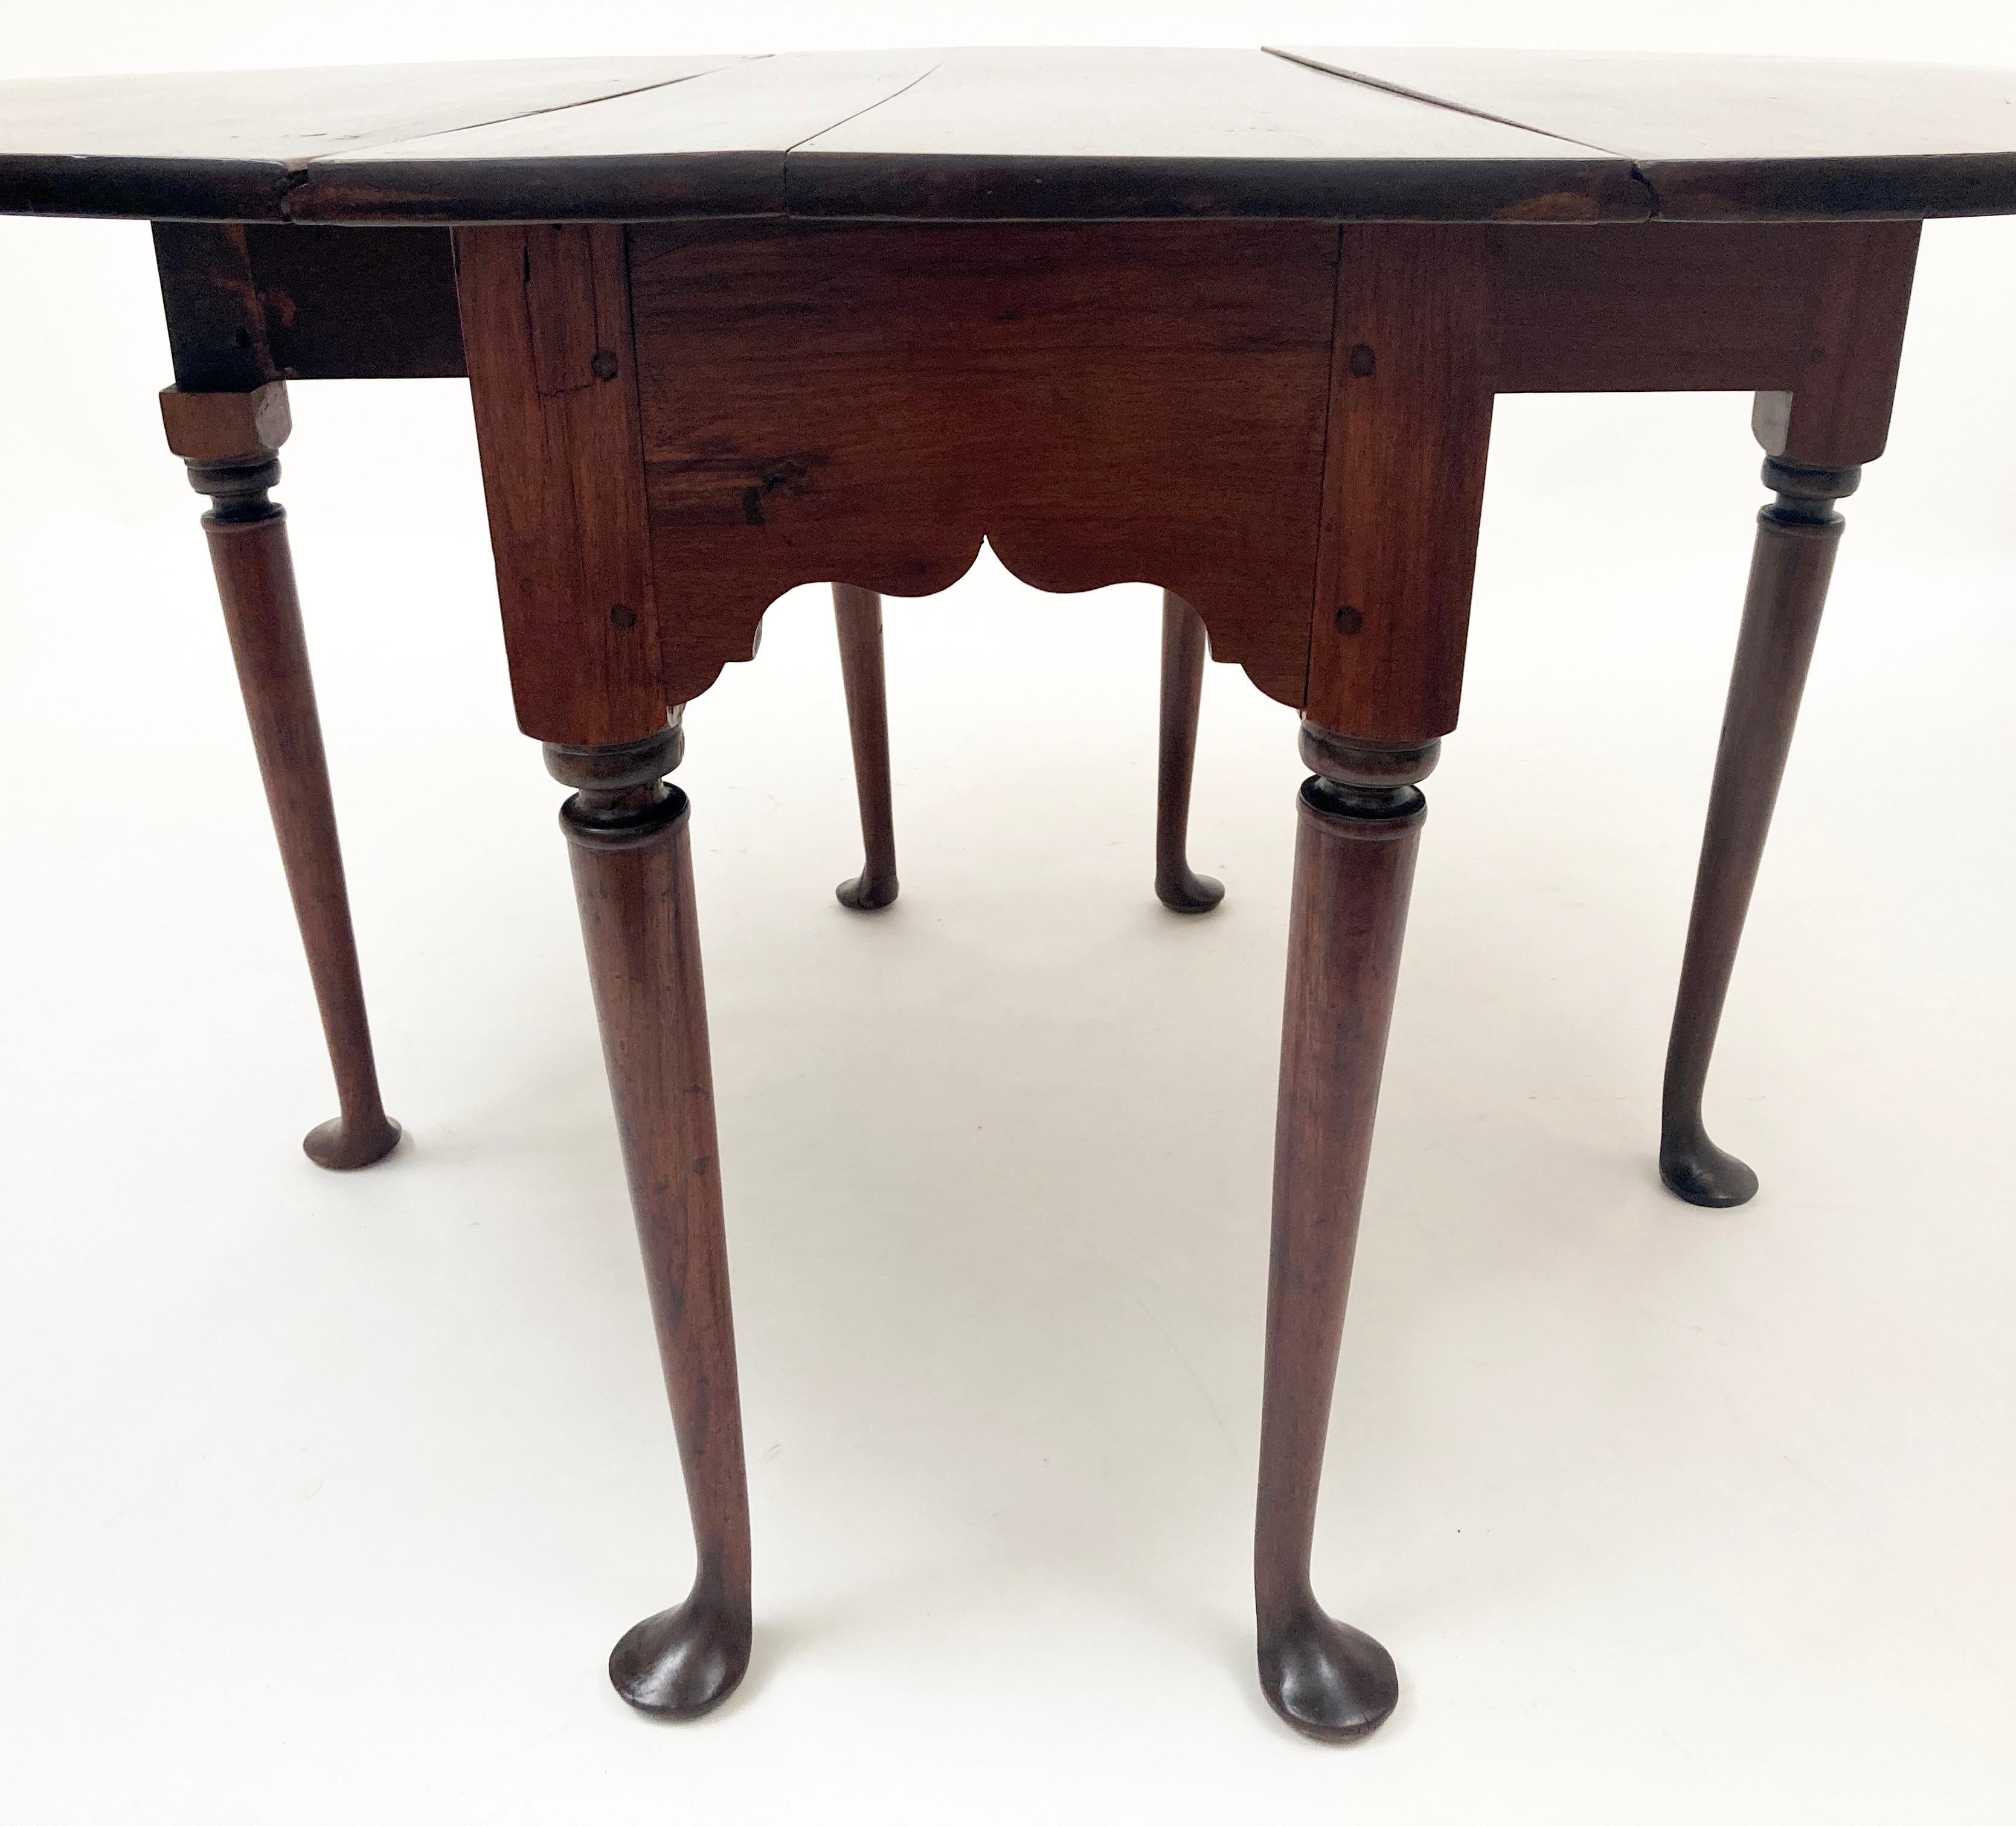 Cette étonnante table en acajou du Kentucky a été fabriquée à la main au milieu des années 1700. Chaque élément de cette table a été réalisé à la main par sculpture, rabotage ou forgeage. Sa construction met en évidence des chevilles en bois, des